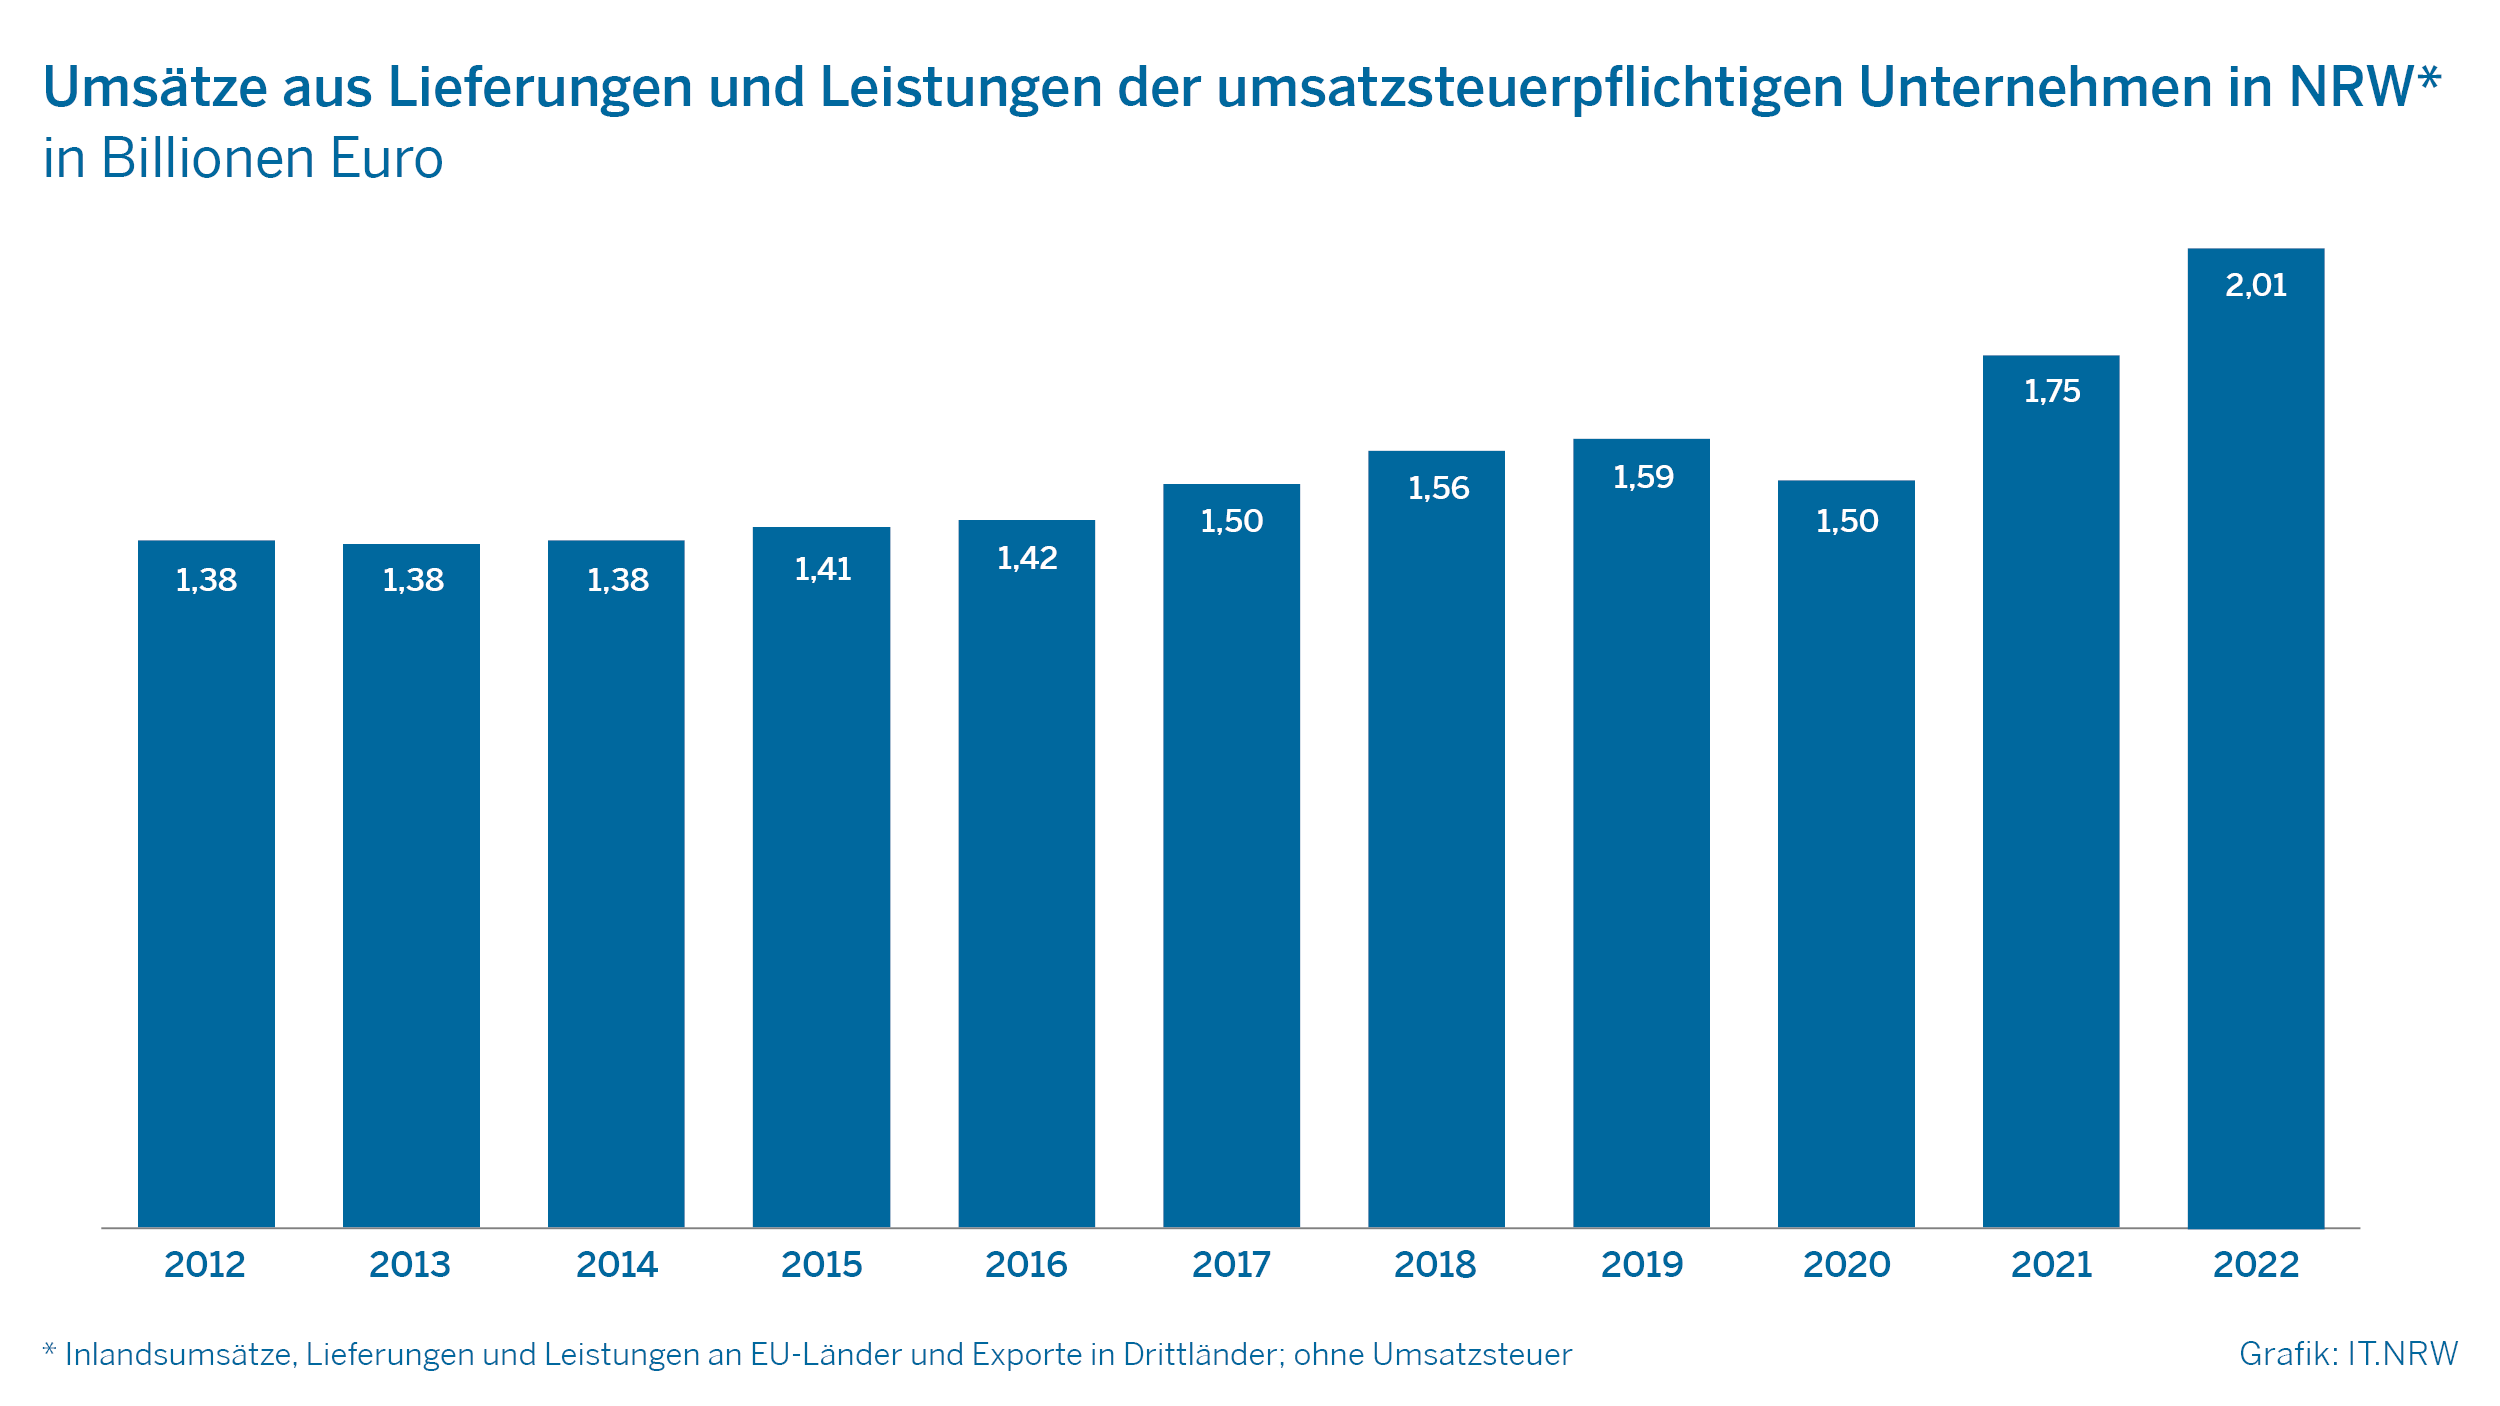 Umsätze aus Lieferungen und Leistungen der umsatzsteuerpflichtigen Unternehmen in NRW